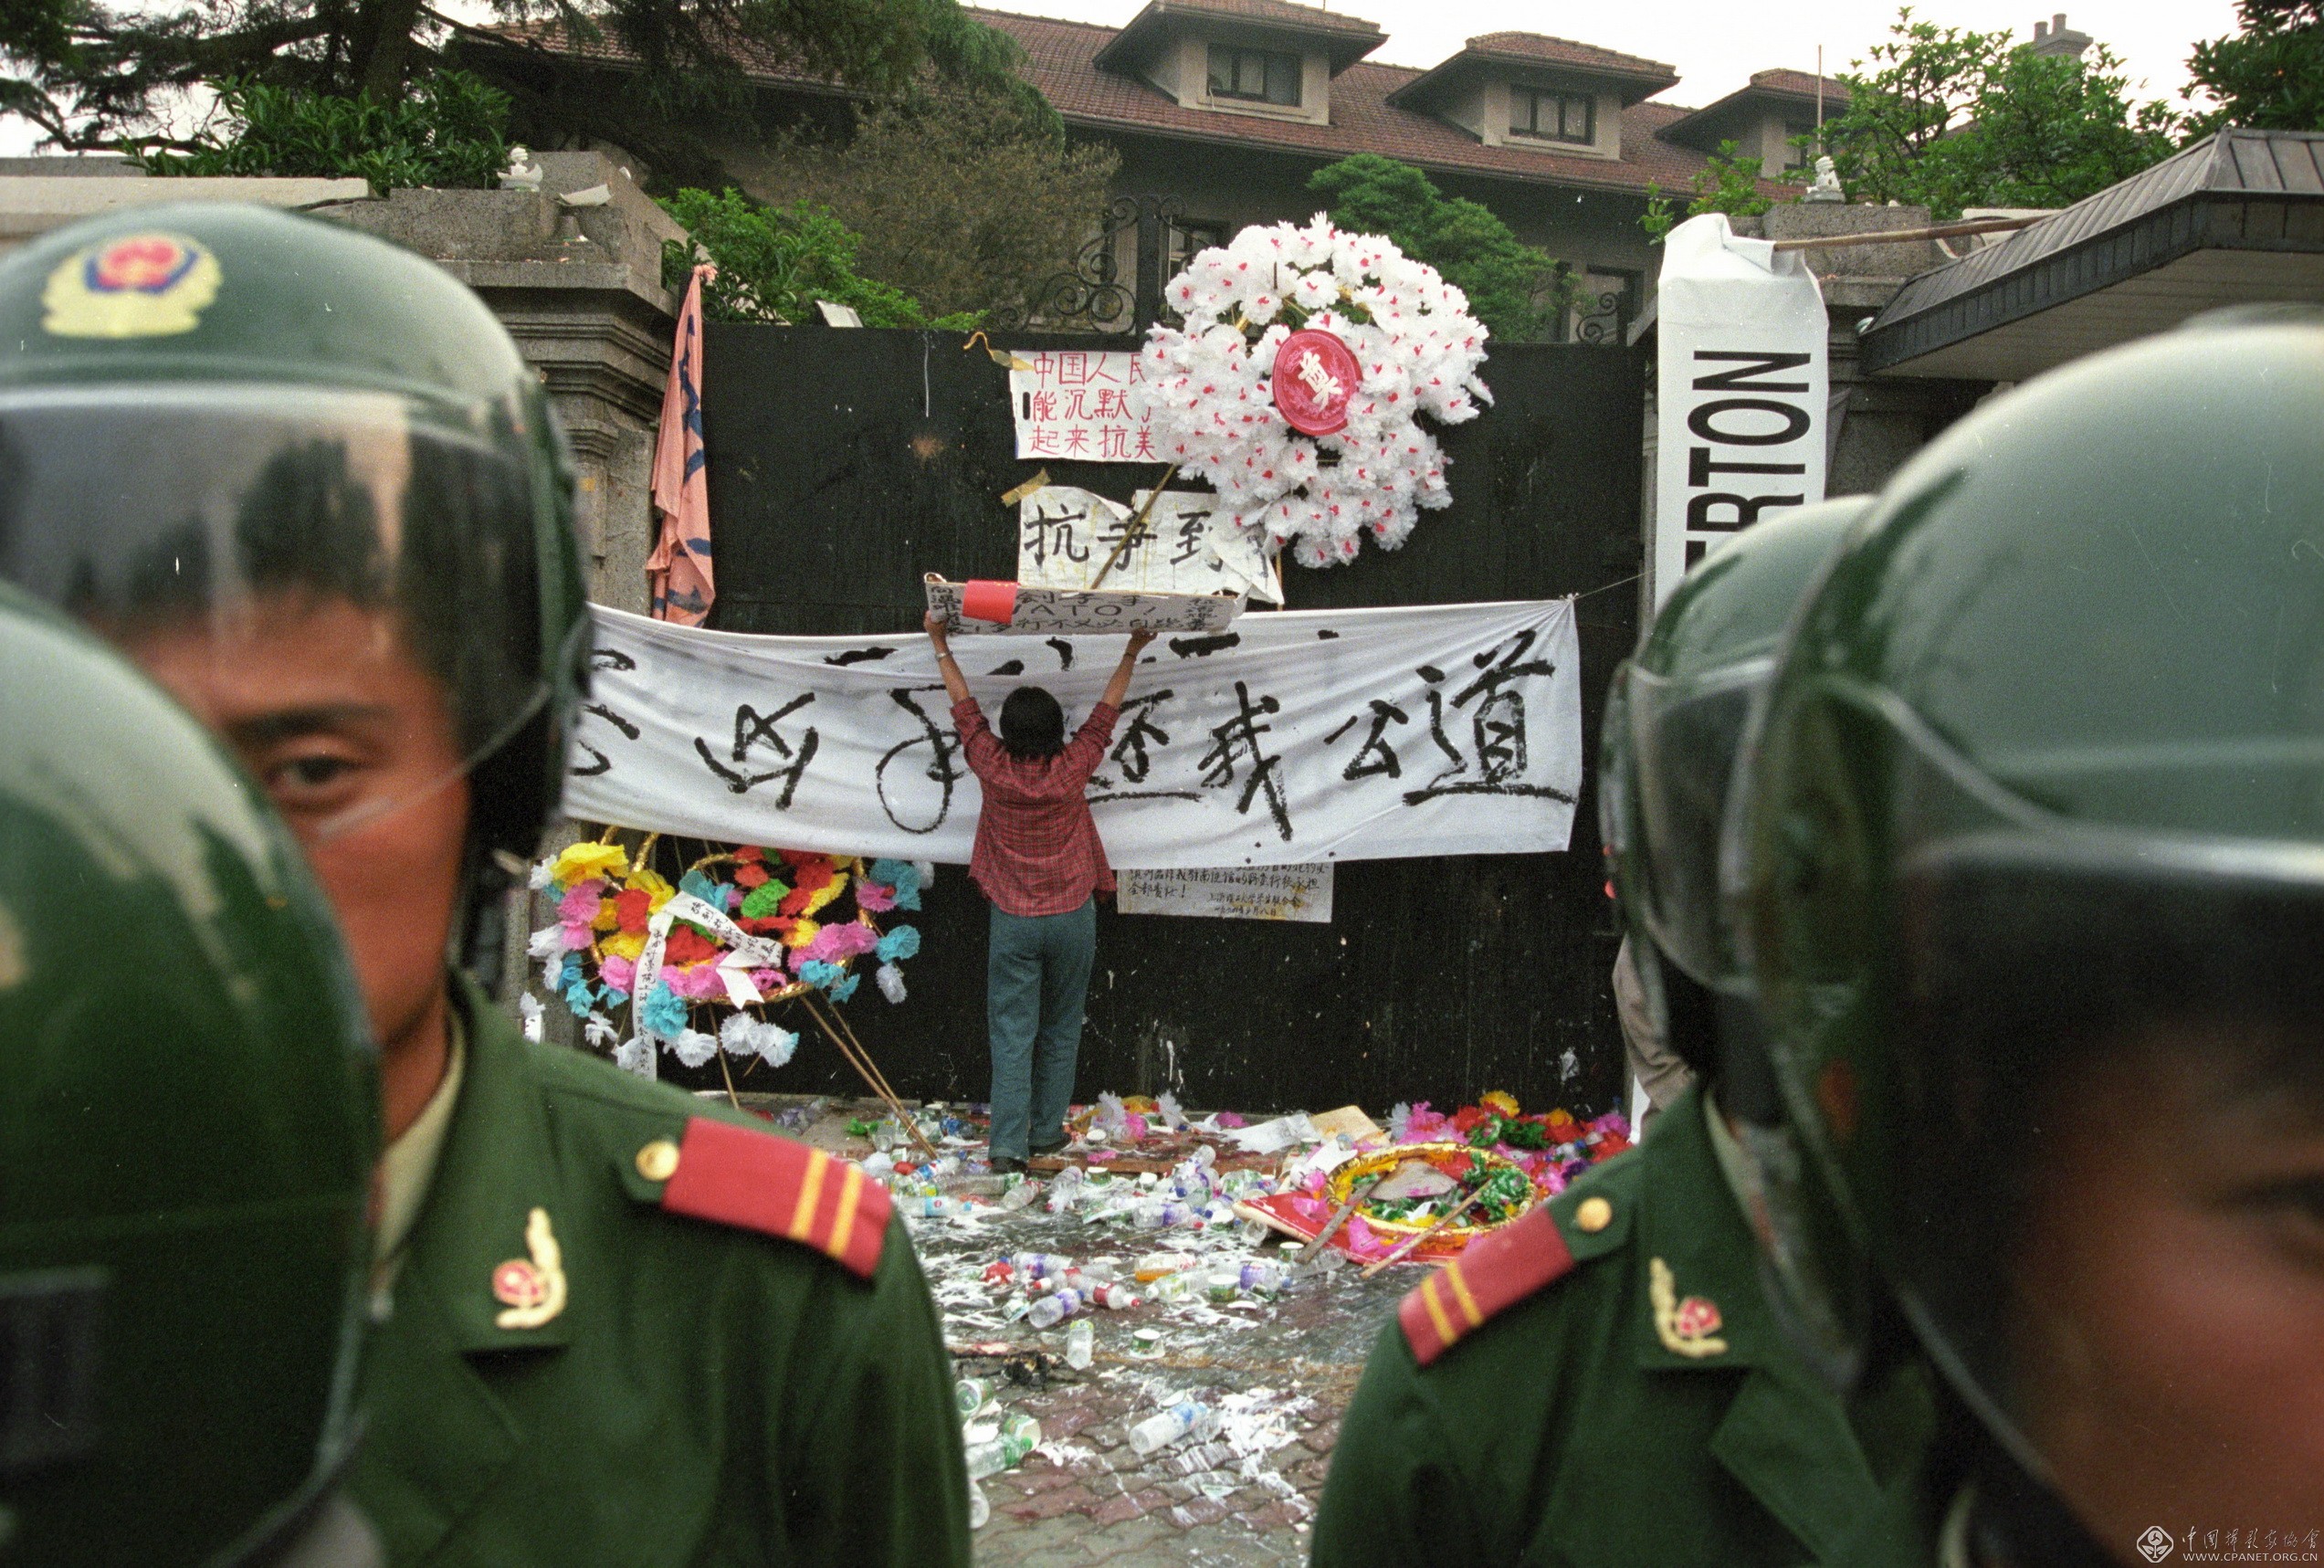 全球连线｜塞中官员凭吊在中国驻南联盟使馆被炸事件中牺牲的烈士_凤凰网视频_凤凰网